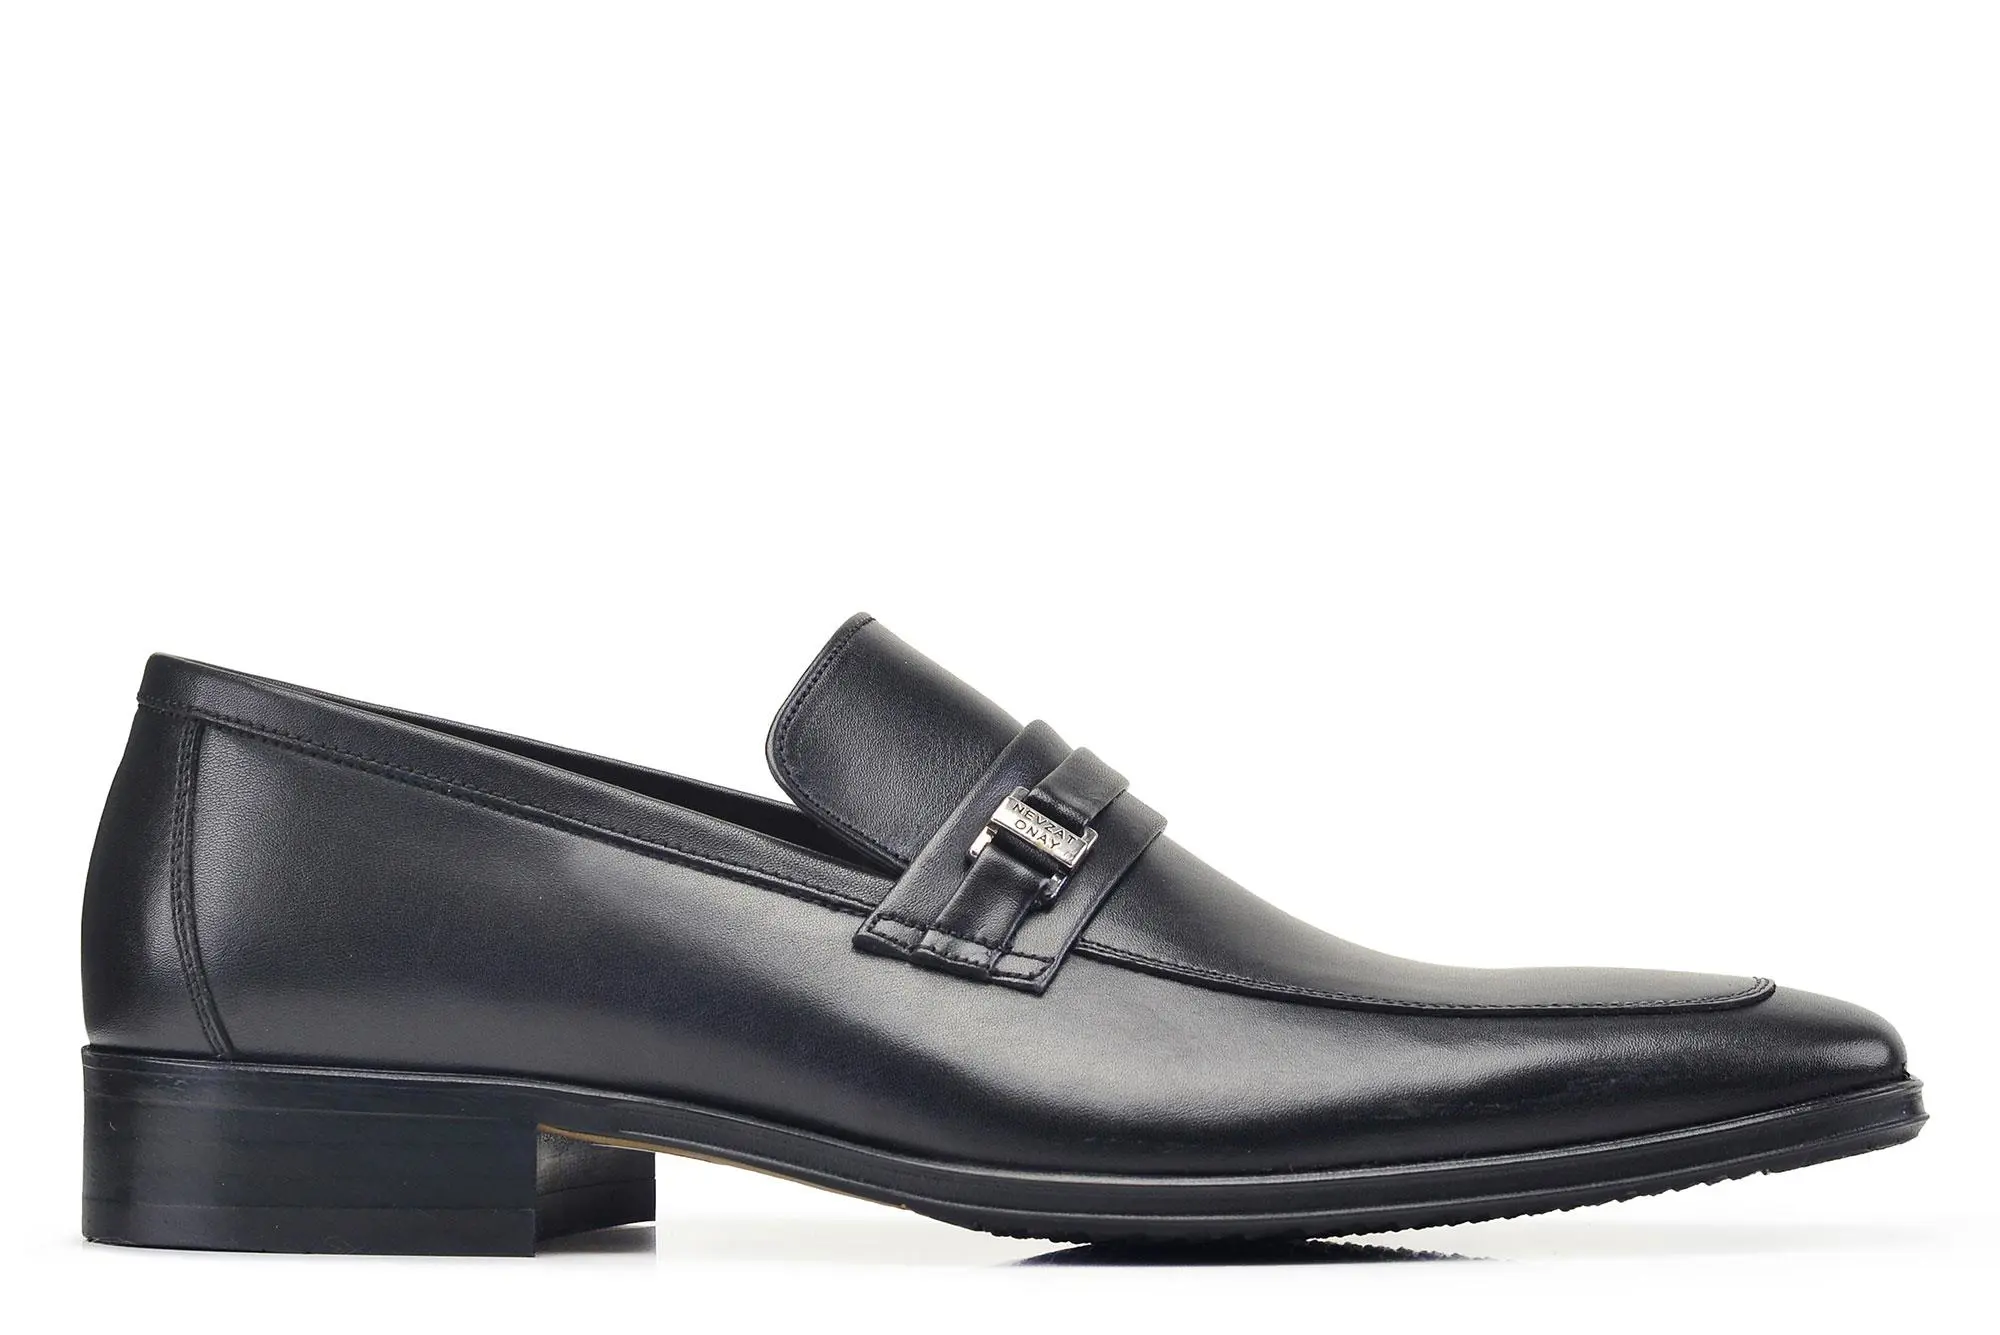 Nevzat Onay Siyah Klasik Bağcıksız Kışlık Erkek Ayakkabı -97181-. 1